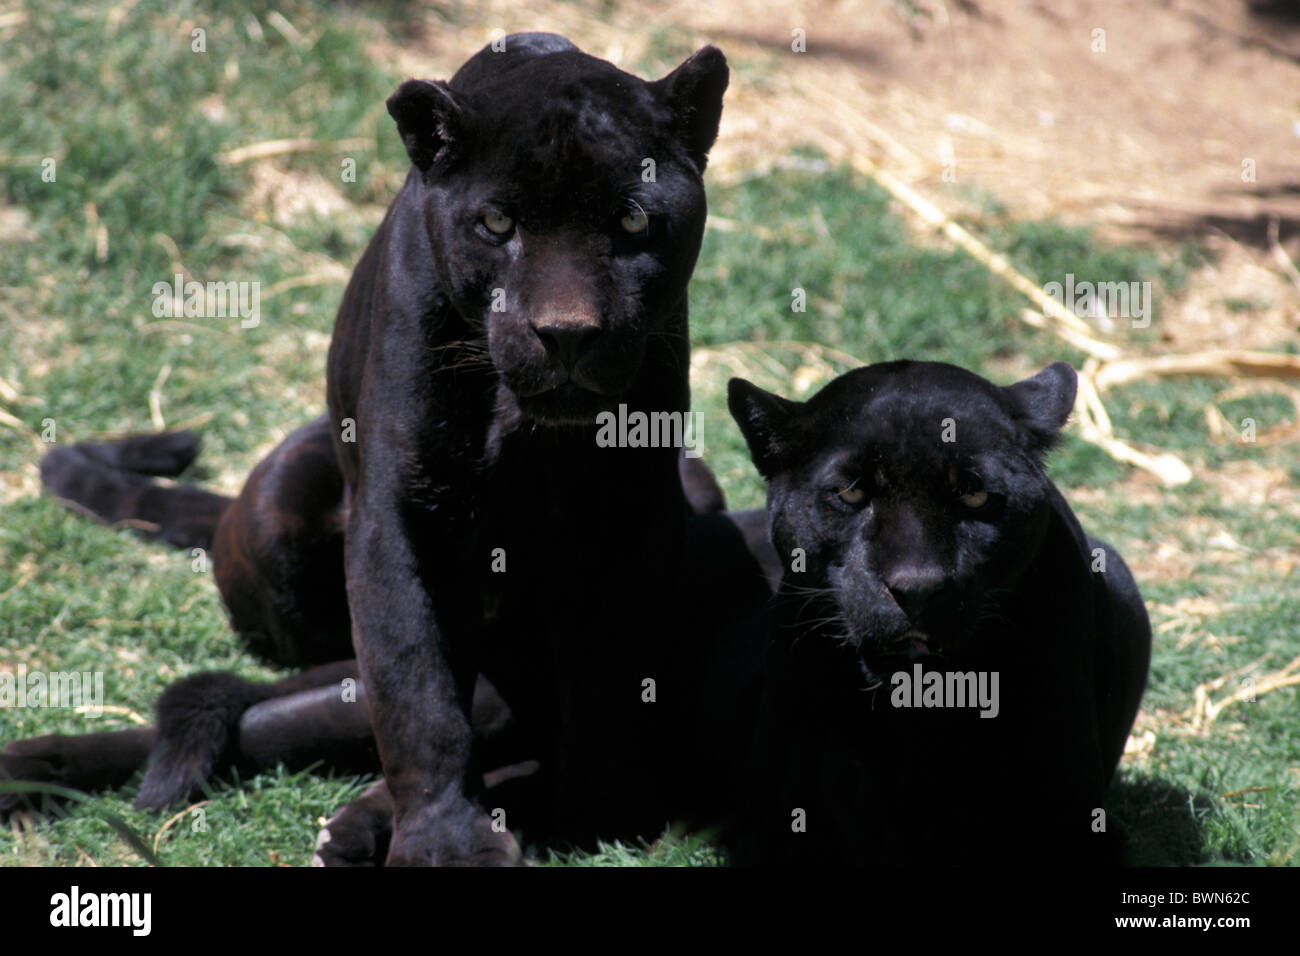 Jaguar Panthera onca black two cats zoo jaguars animal Stock Photo